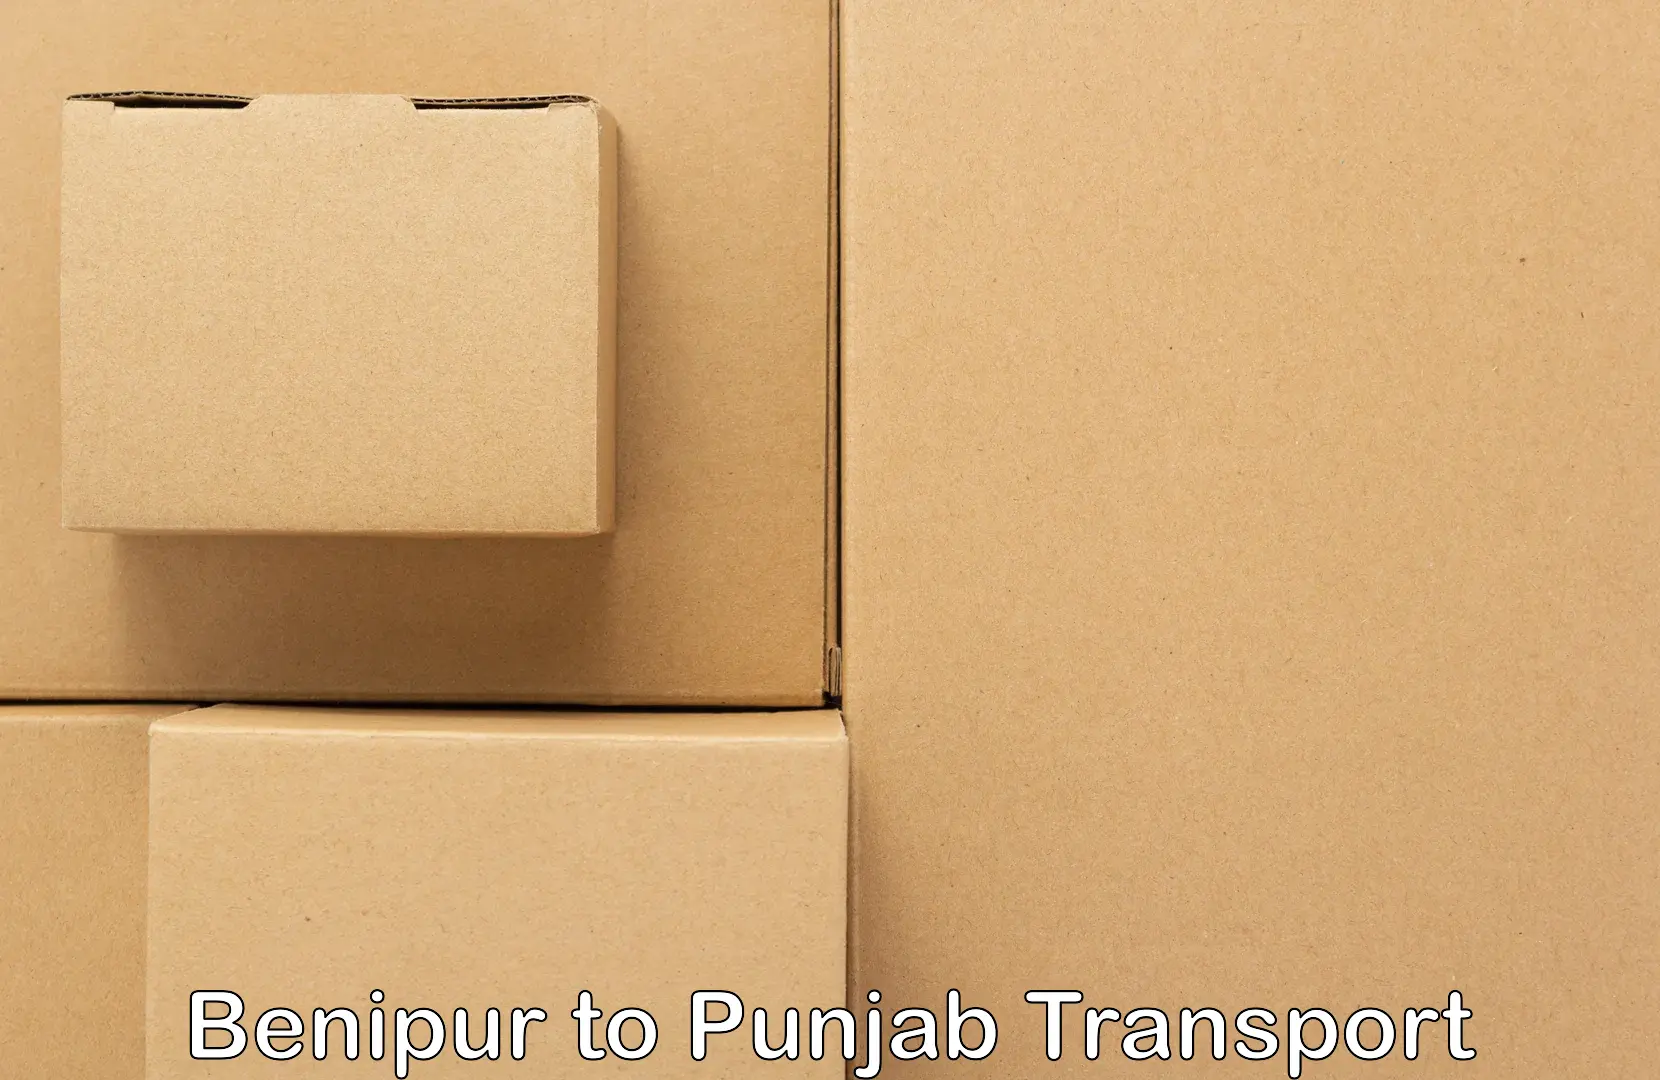 Cargo train transport services Benipur to Gurdaspur